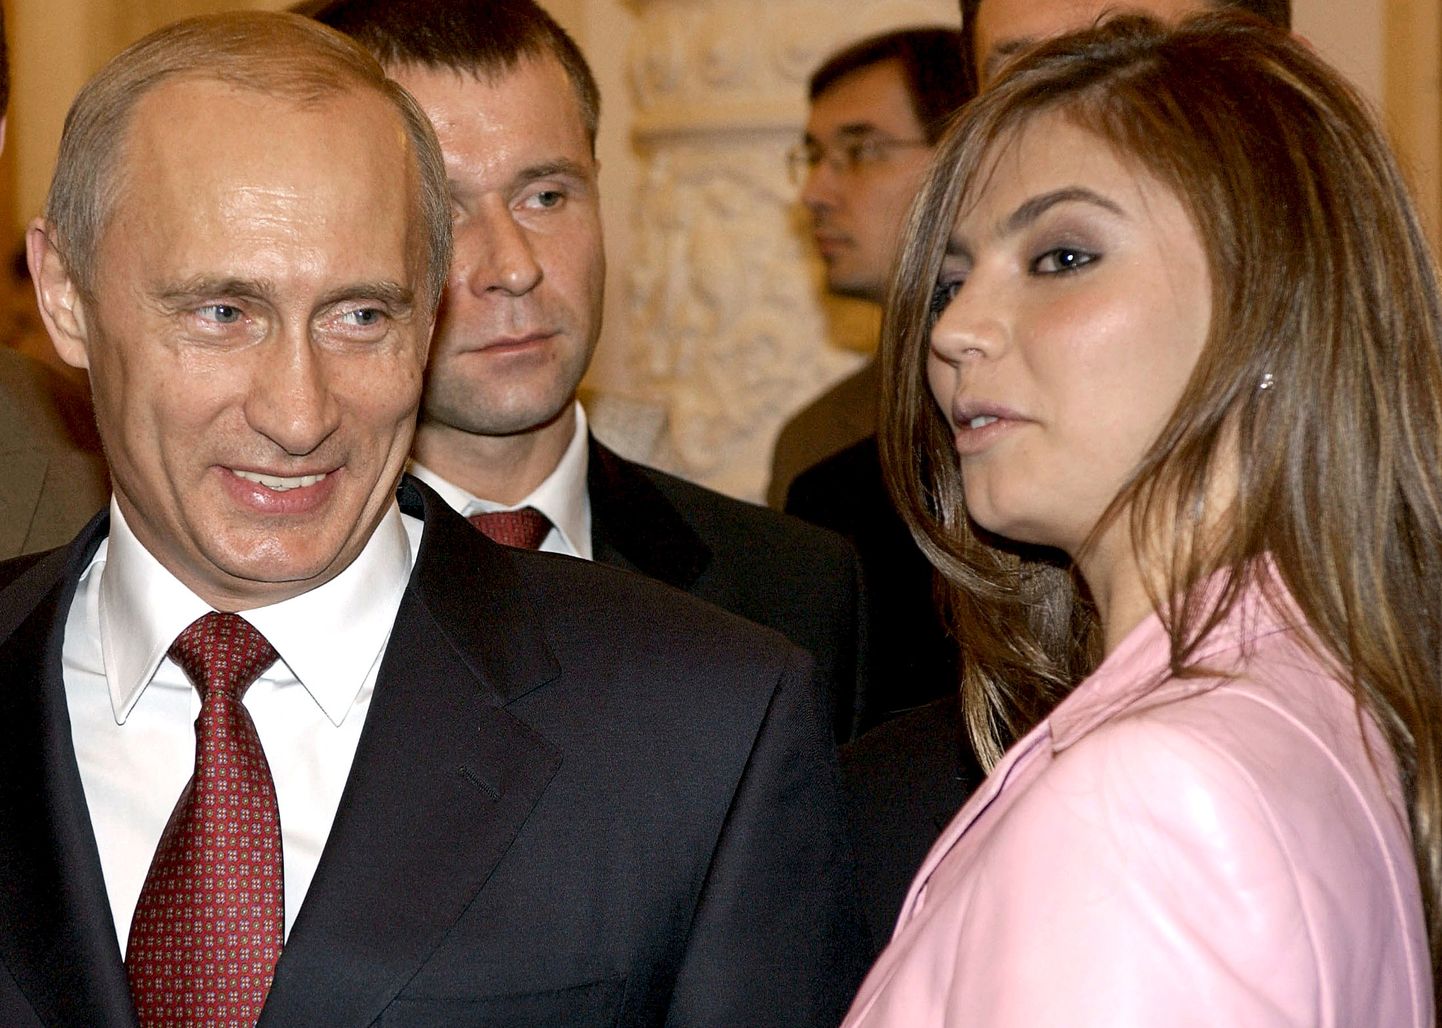 Venemaa president Vladimir Putin ja Venemaa endine iluvõimleja Alina Kabaeva 2004. aastal.